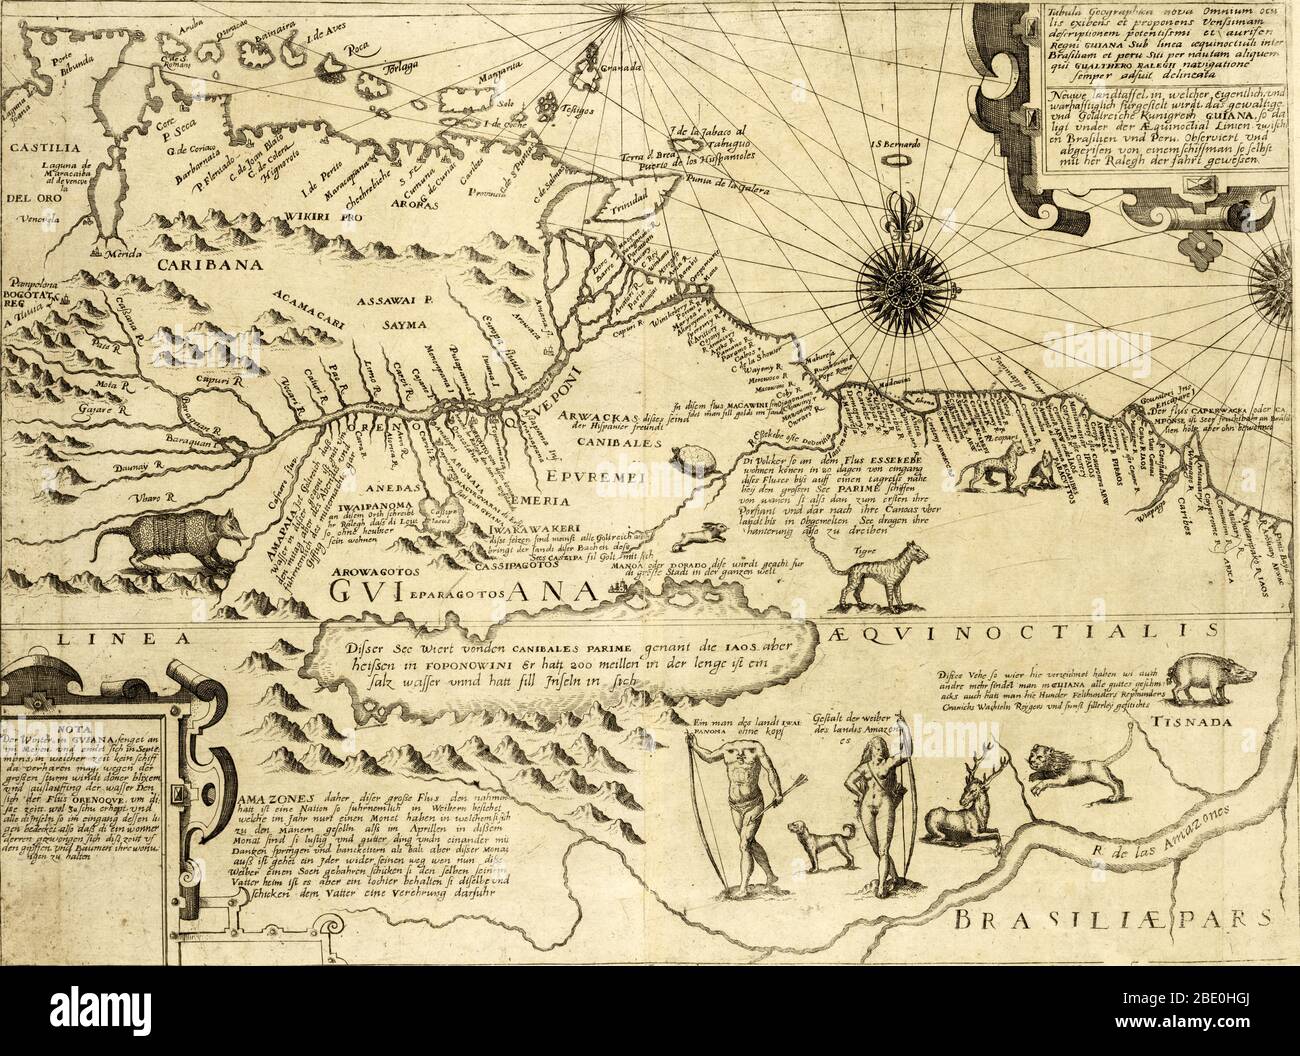 Mappa di Guyana e Brasile che mostra il fiume Amazzonia, animali selvatici, un uomo senza testa 'della terra Ewaipanoma,' una donna Amazzonia, e il fittizio lago Parime, sulla riva nord del quale si trova la città di El Dorado. El Dorado era la leggendaria "Città perduta dell'oro" che affascinava gli esploratori fin dai tempi dei conquistadores spagnoli e si suppone fosse situata sul leggendario lago Parime, negli altopiani della Guyana. Questa mappa è adattata da una mappa leggermente precedente di Jodocus Hondius, anche se il titolo dichiara che la mappa è stata 'cured e disegnato da un marinaio che accompagna Walter Raleigh sul suo Foto Stock